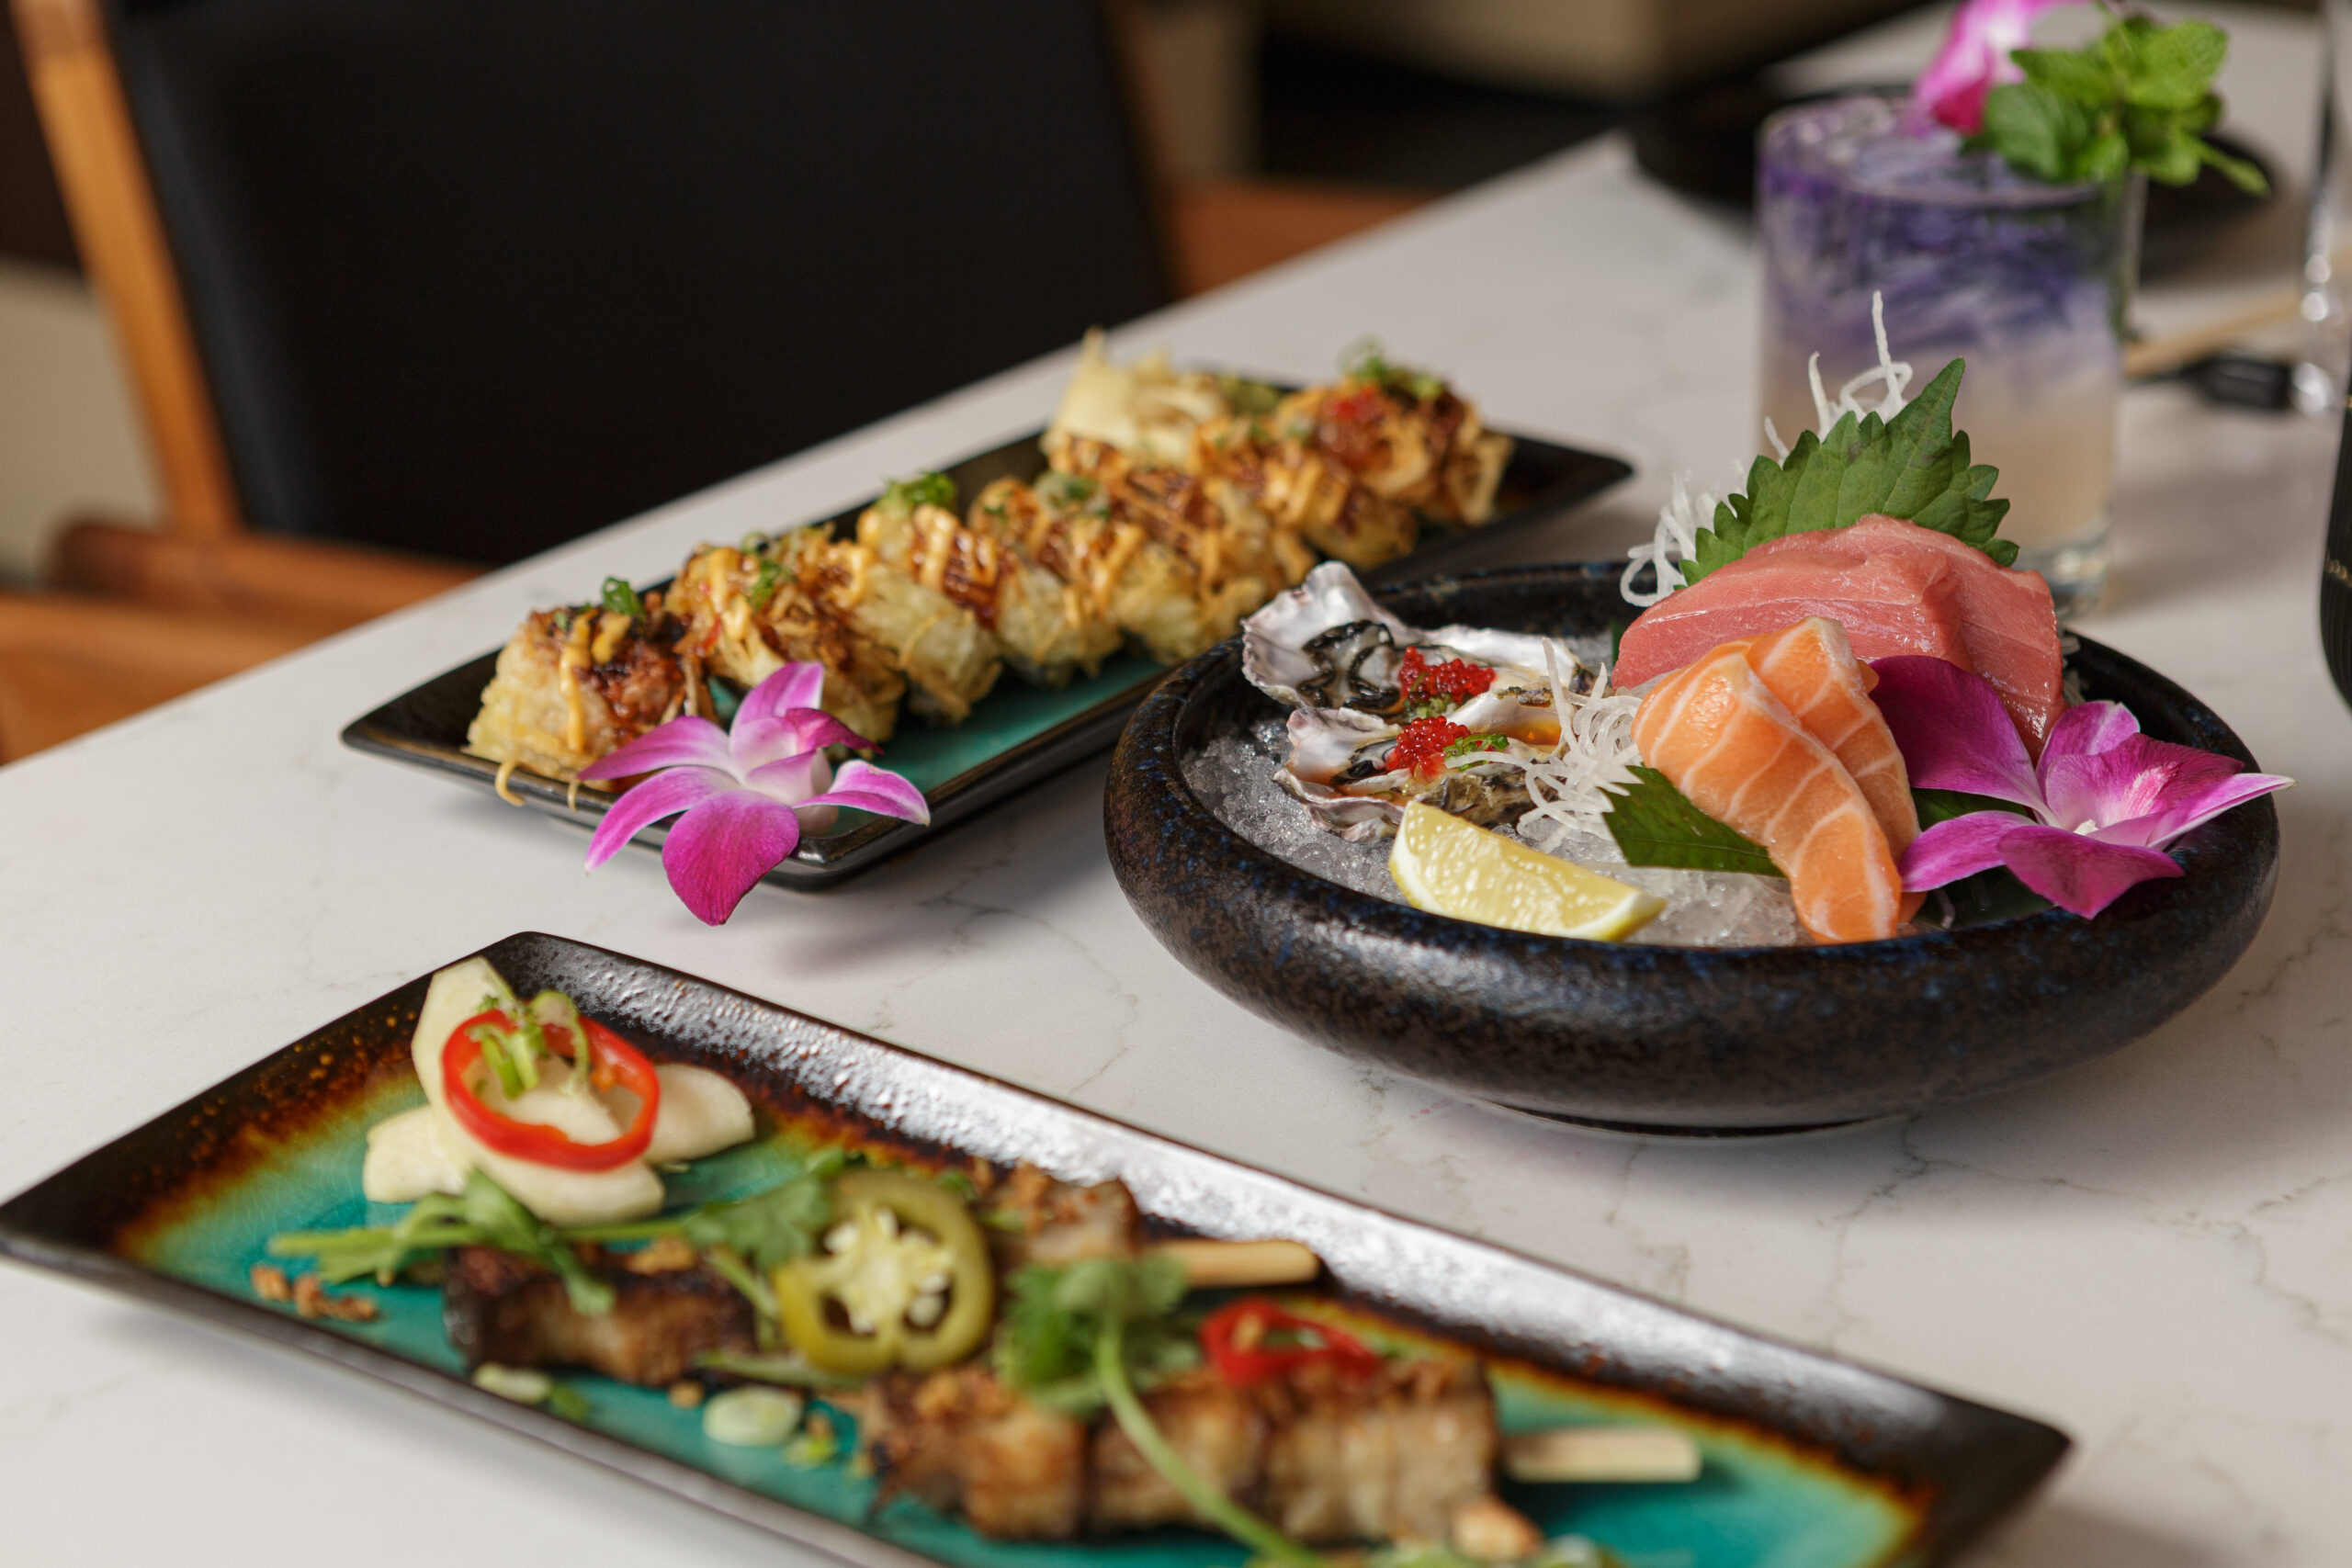 Image of Kai Restaurant food dishes with freshly cut sashimi